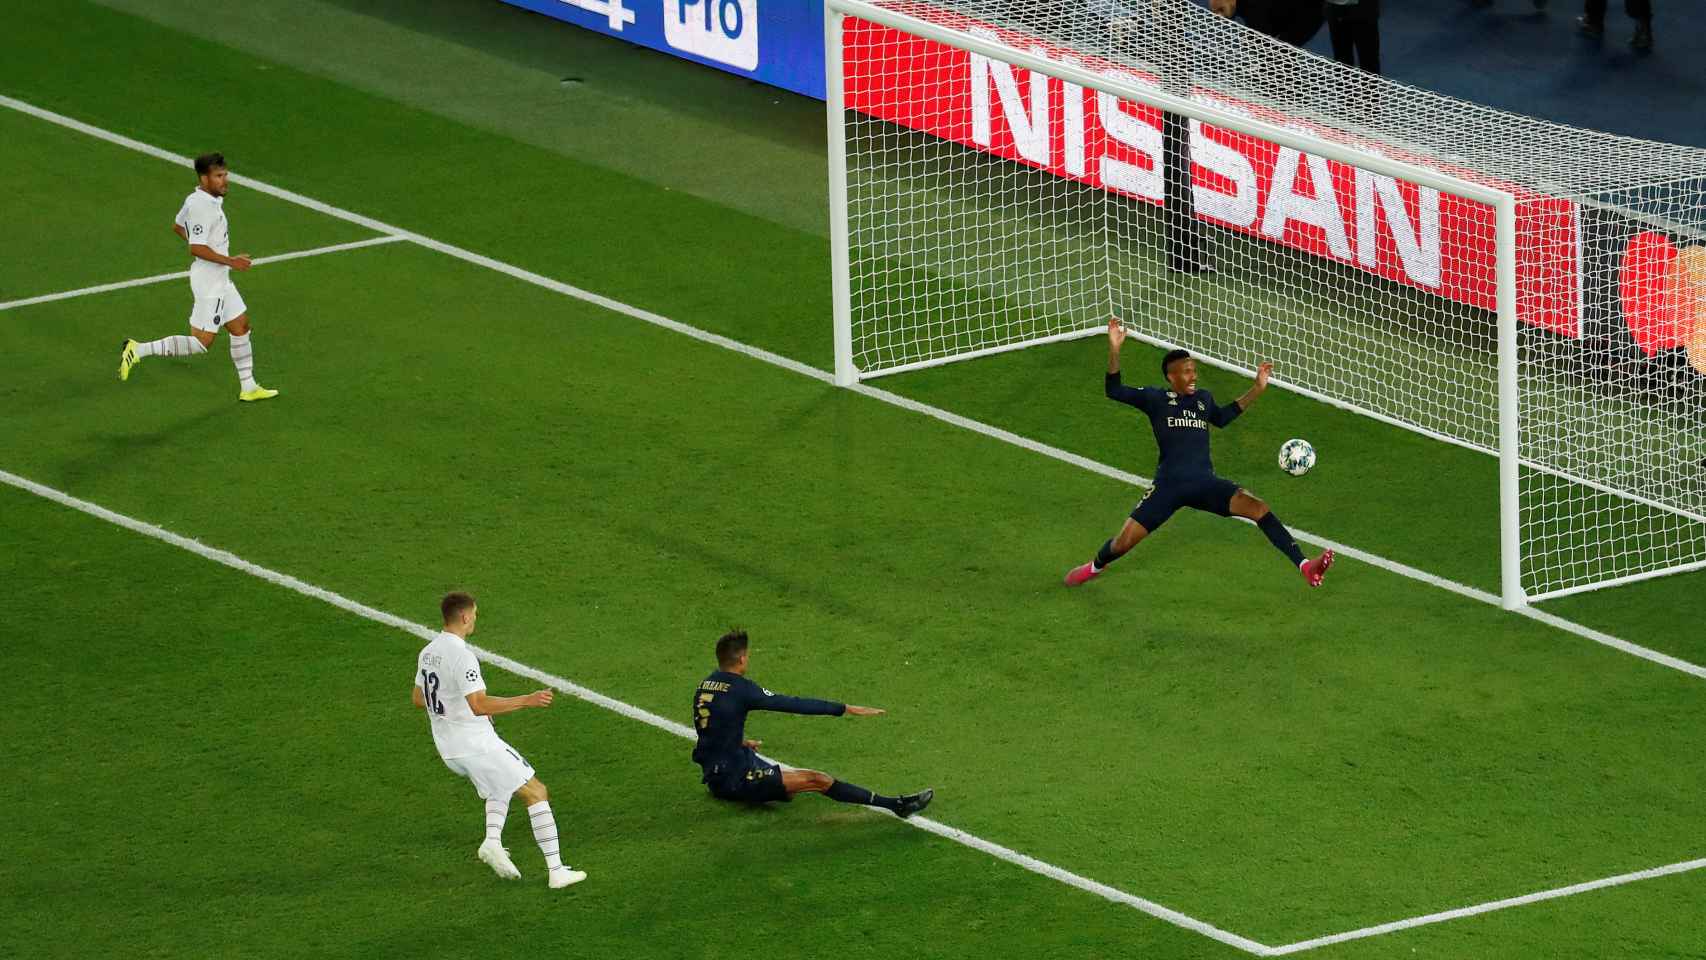 Thomas Meunier empuja adentro de la portería y marca el último gol del PSG